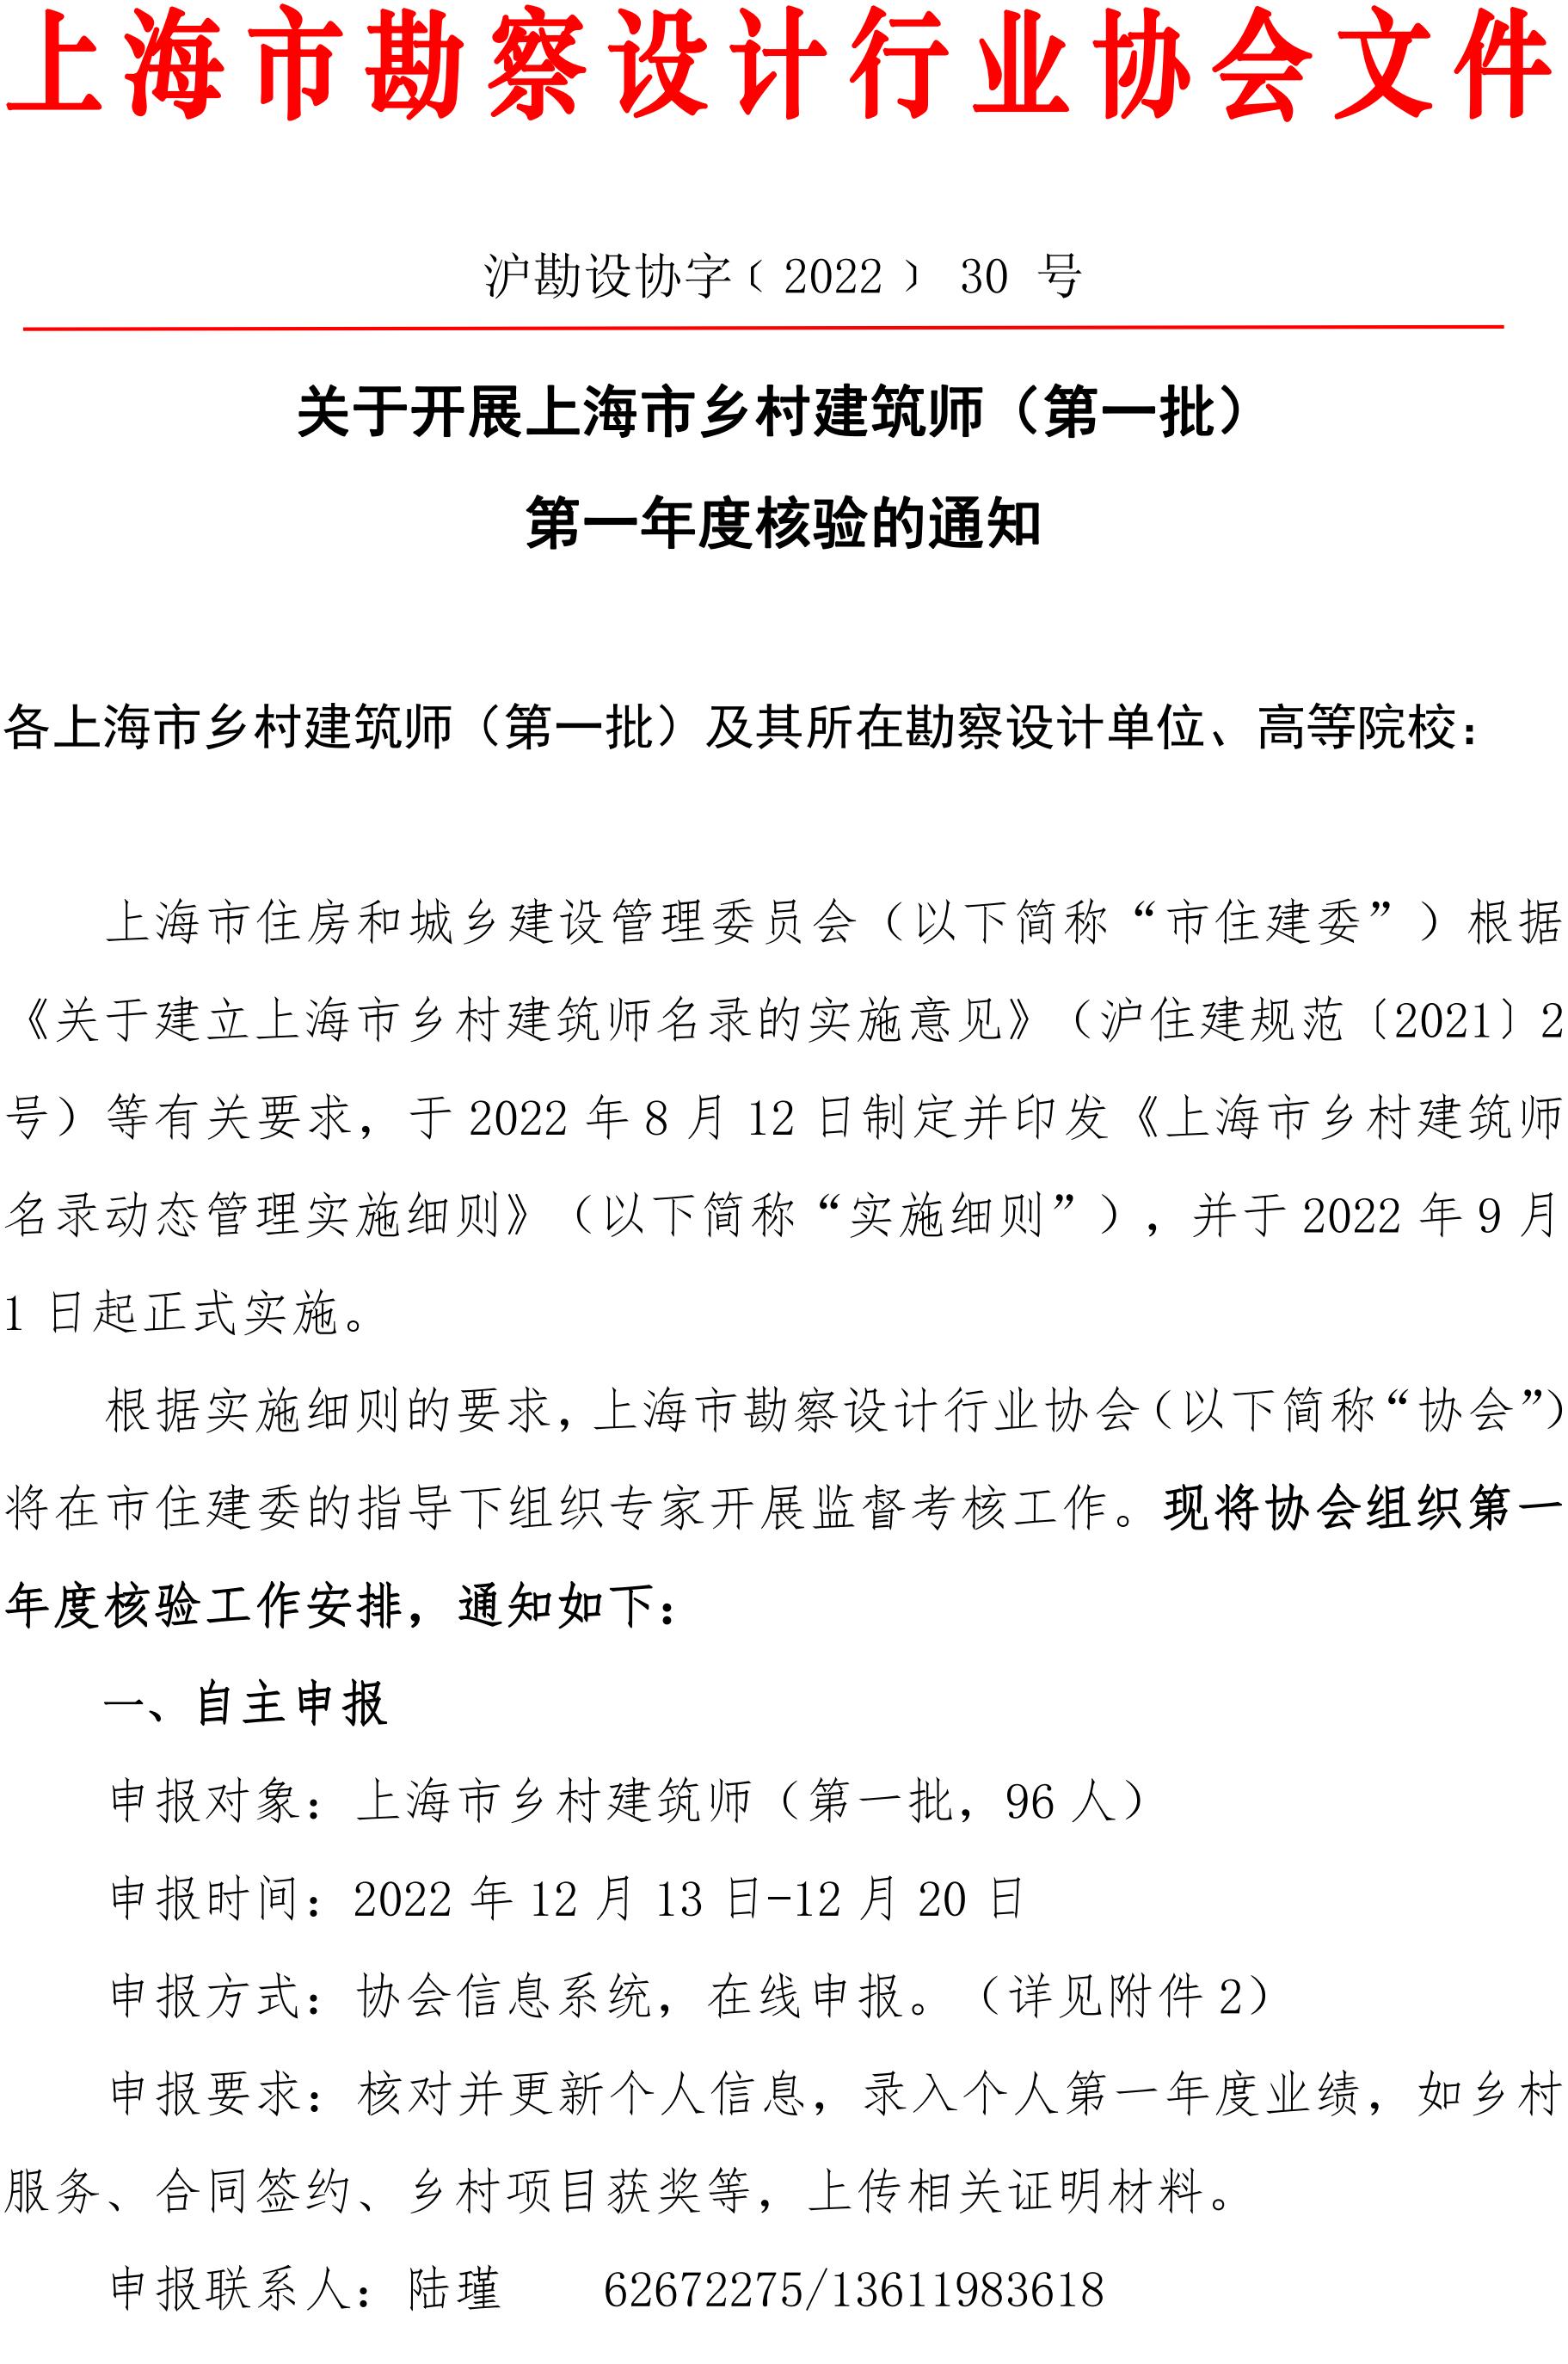 221212 关于开展上海市乡村建筑师（第一批） 第一年度核验的通知_00.jpg